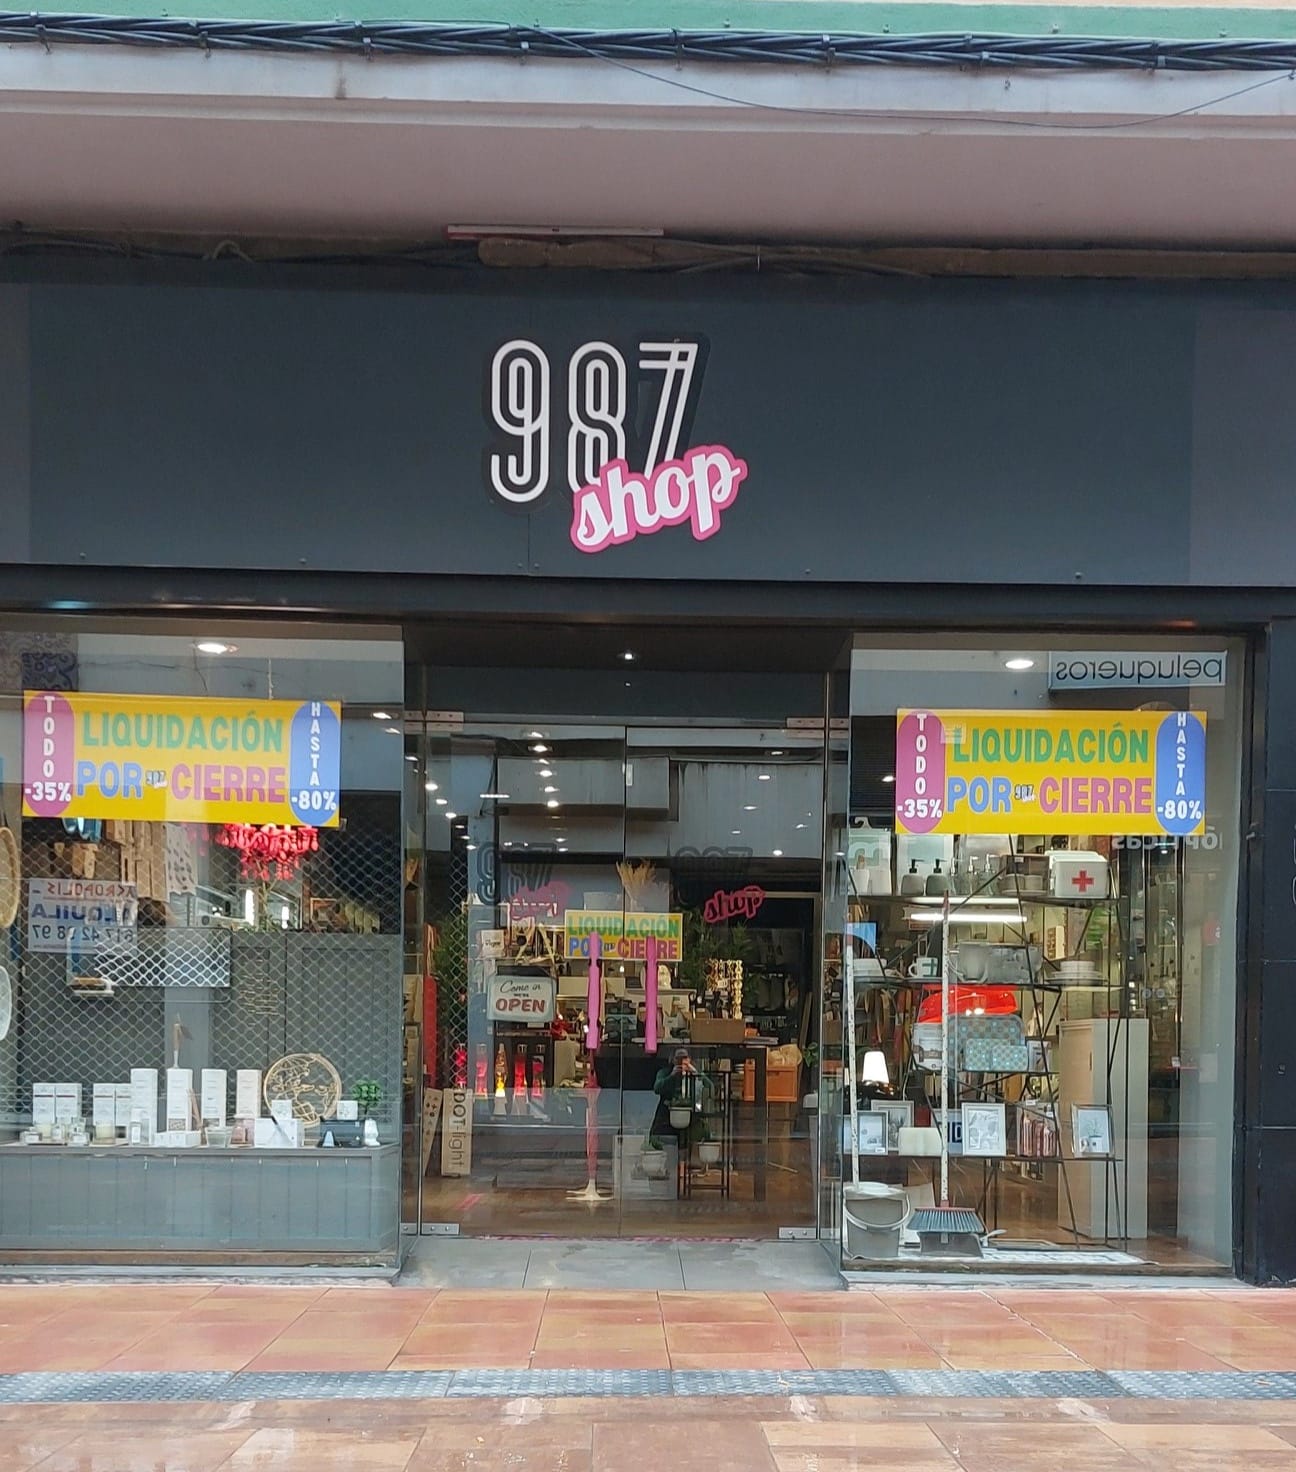 987 Shop cerrará sus puertas a finales de mes.